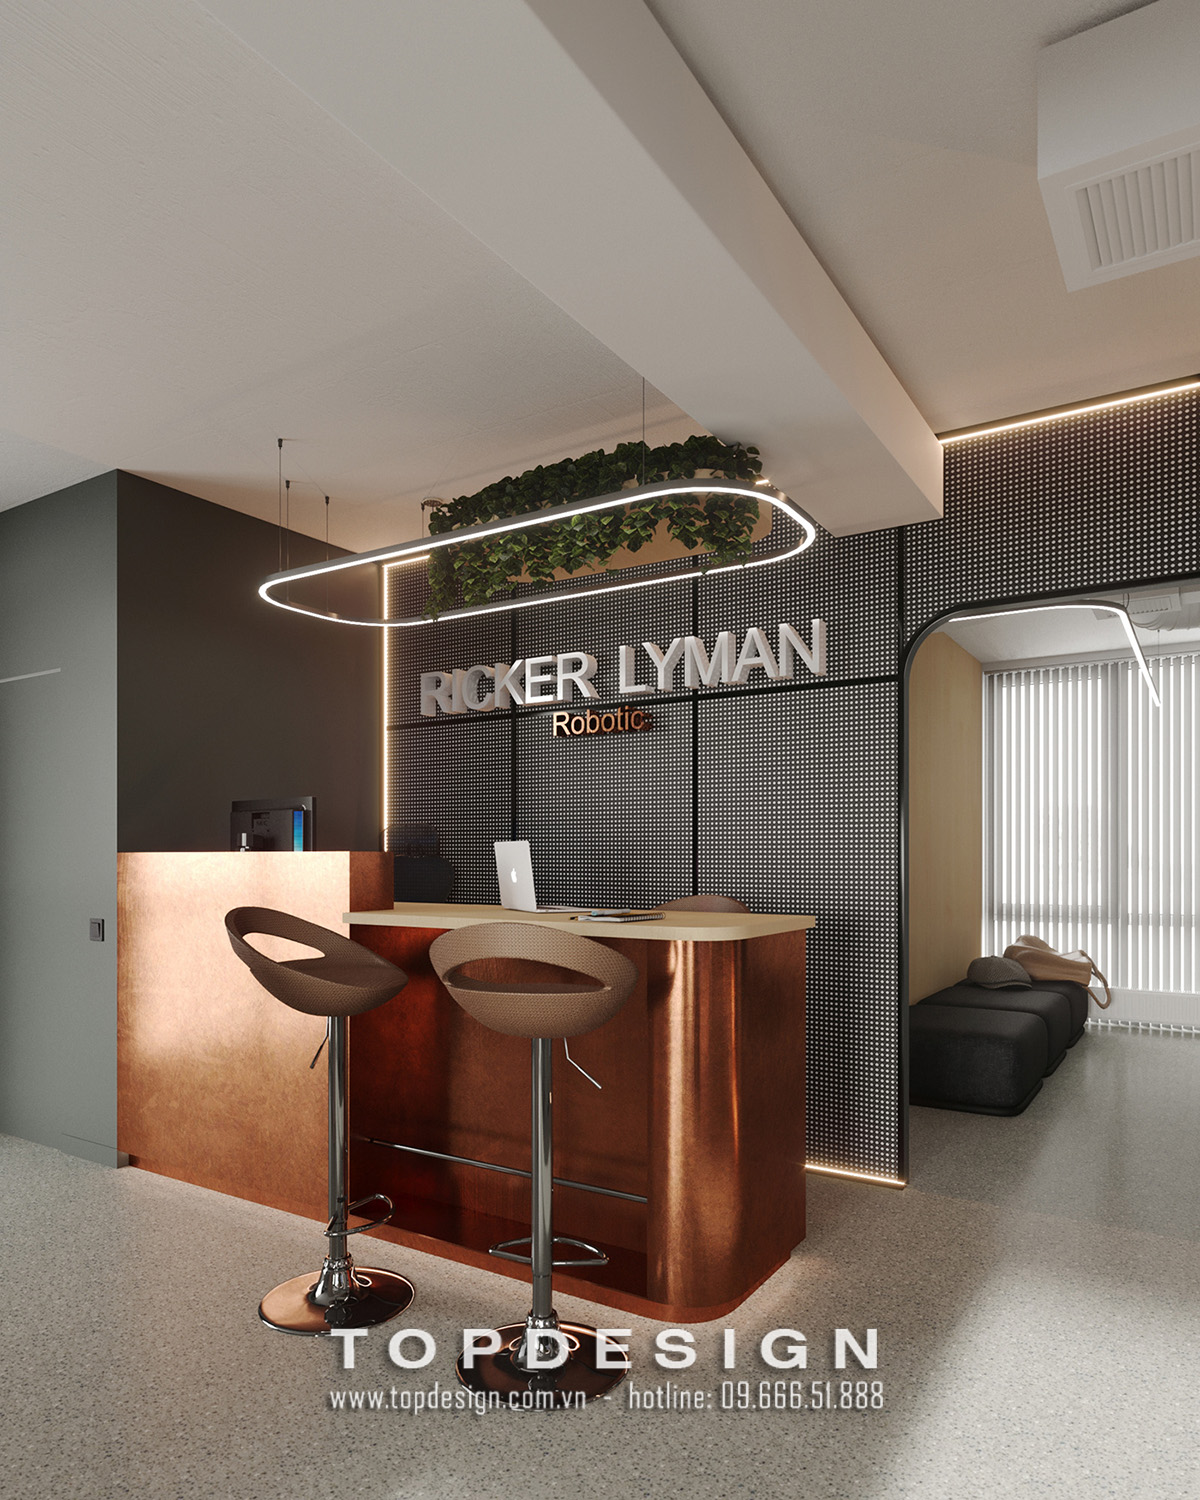 21.Mẫu thiết kế văn phòng Ricky Leman tại Capital Palace tiết kiệm không gian, chi phí_TOPDESIGN